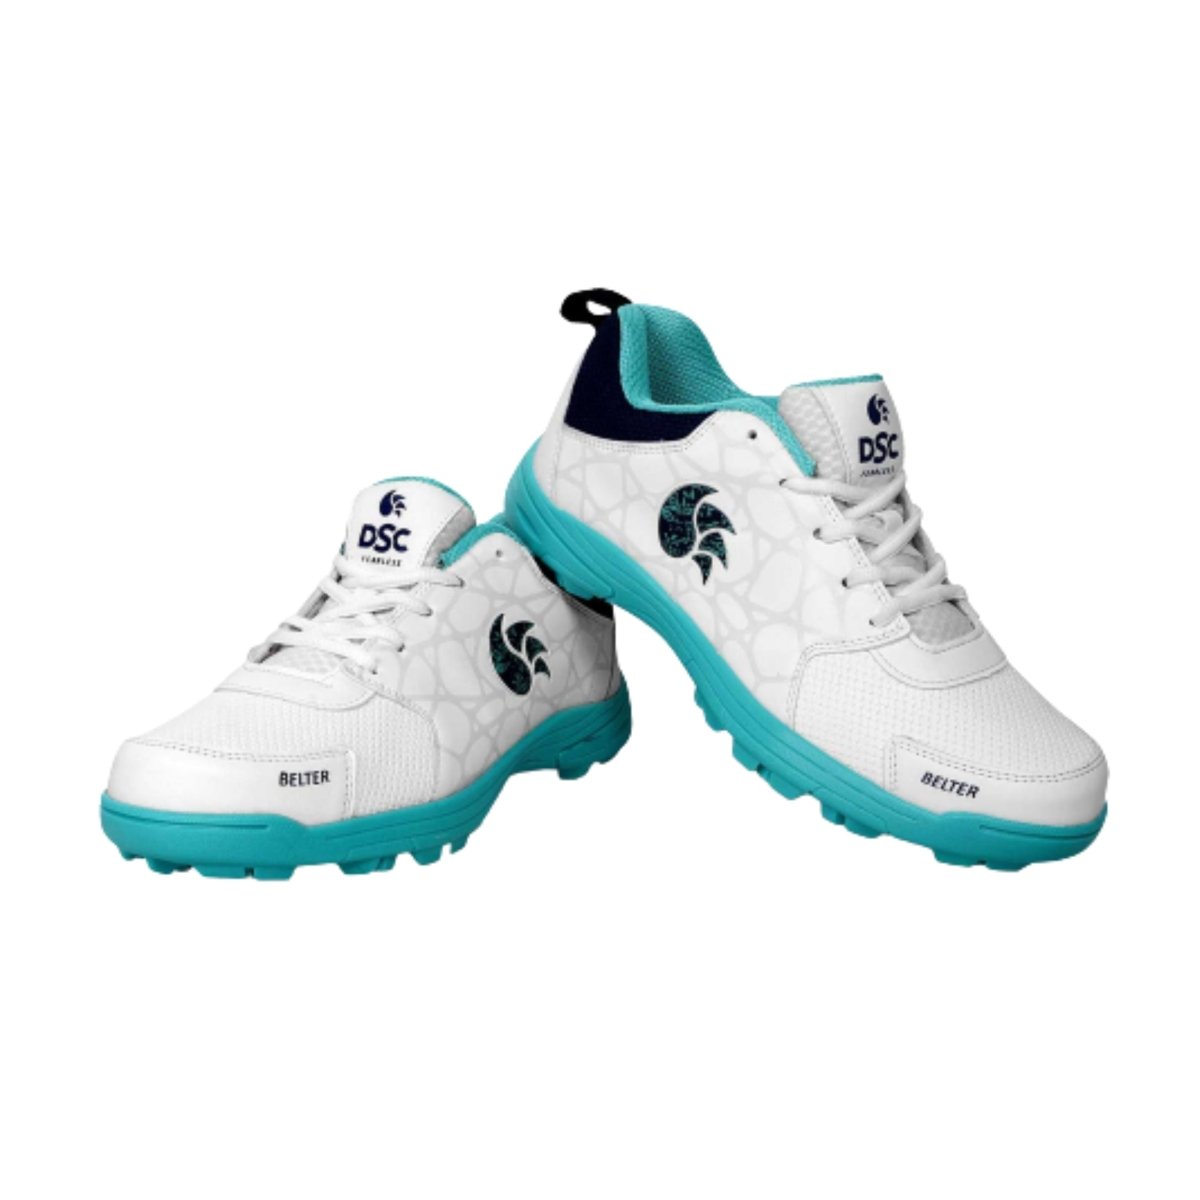 DSC Belter Cricket Shoes - Acrux Sports